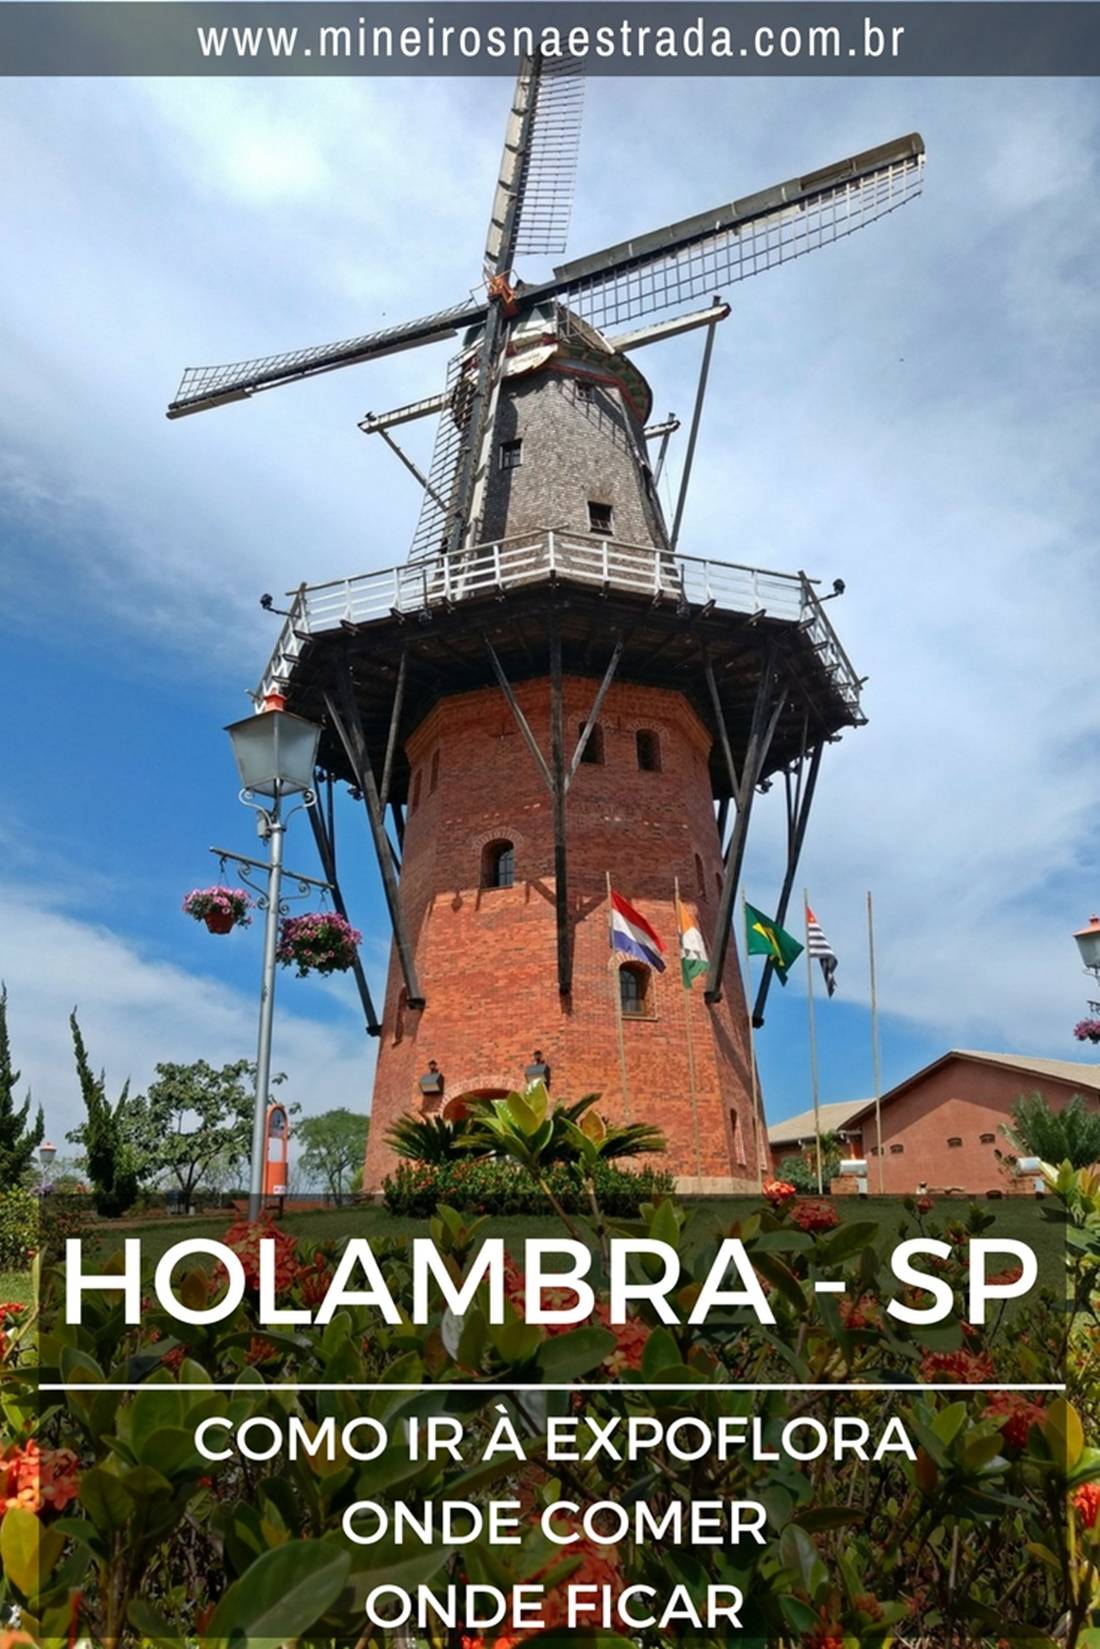 Holambra é uma pequena cidade da Região Metropolitana de Campinas, famosa por ser o maior centro produtor de flores e plantas ornamentais do Brasil. Anualmente, em setembro, acontece a Expoflora, o maior evento do ramo. Veja como se programar para participar.